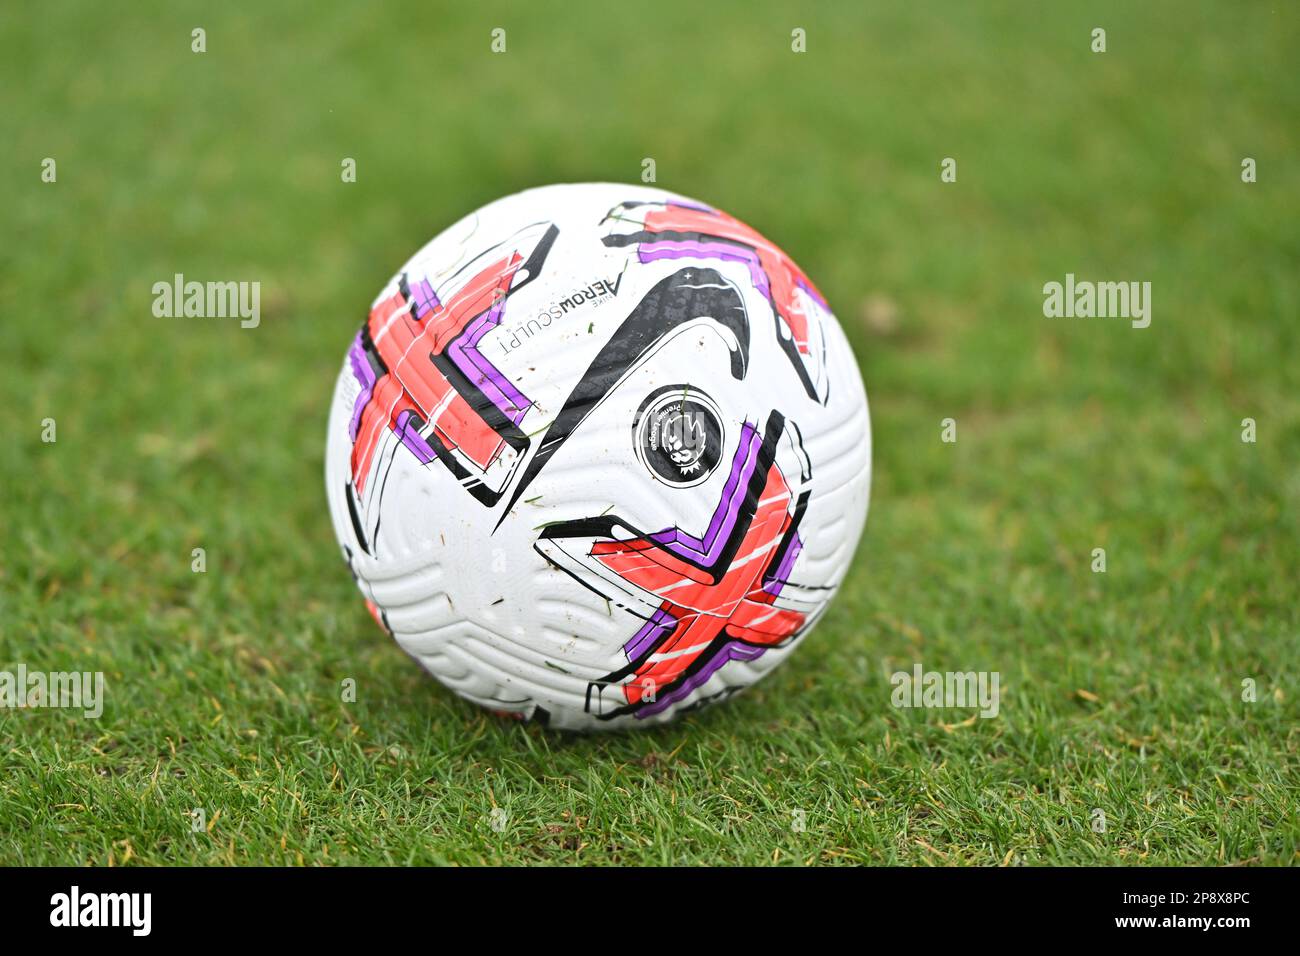 Premier League Flight Officiel Match Ballon (Taille 5) 2023